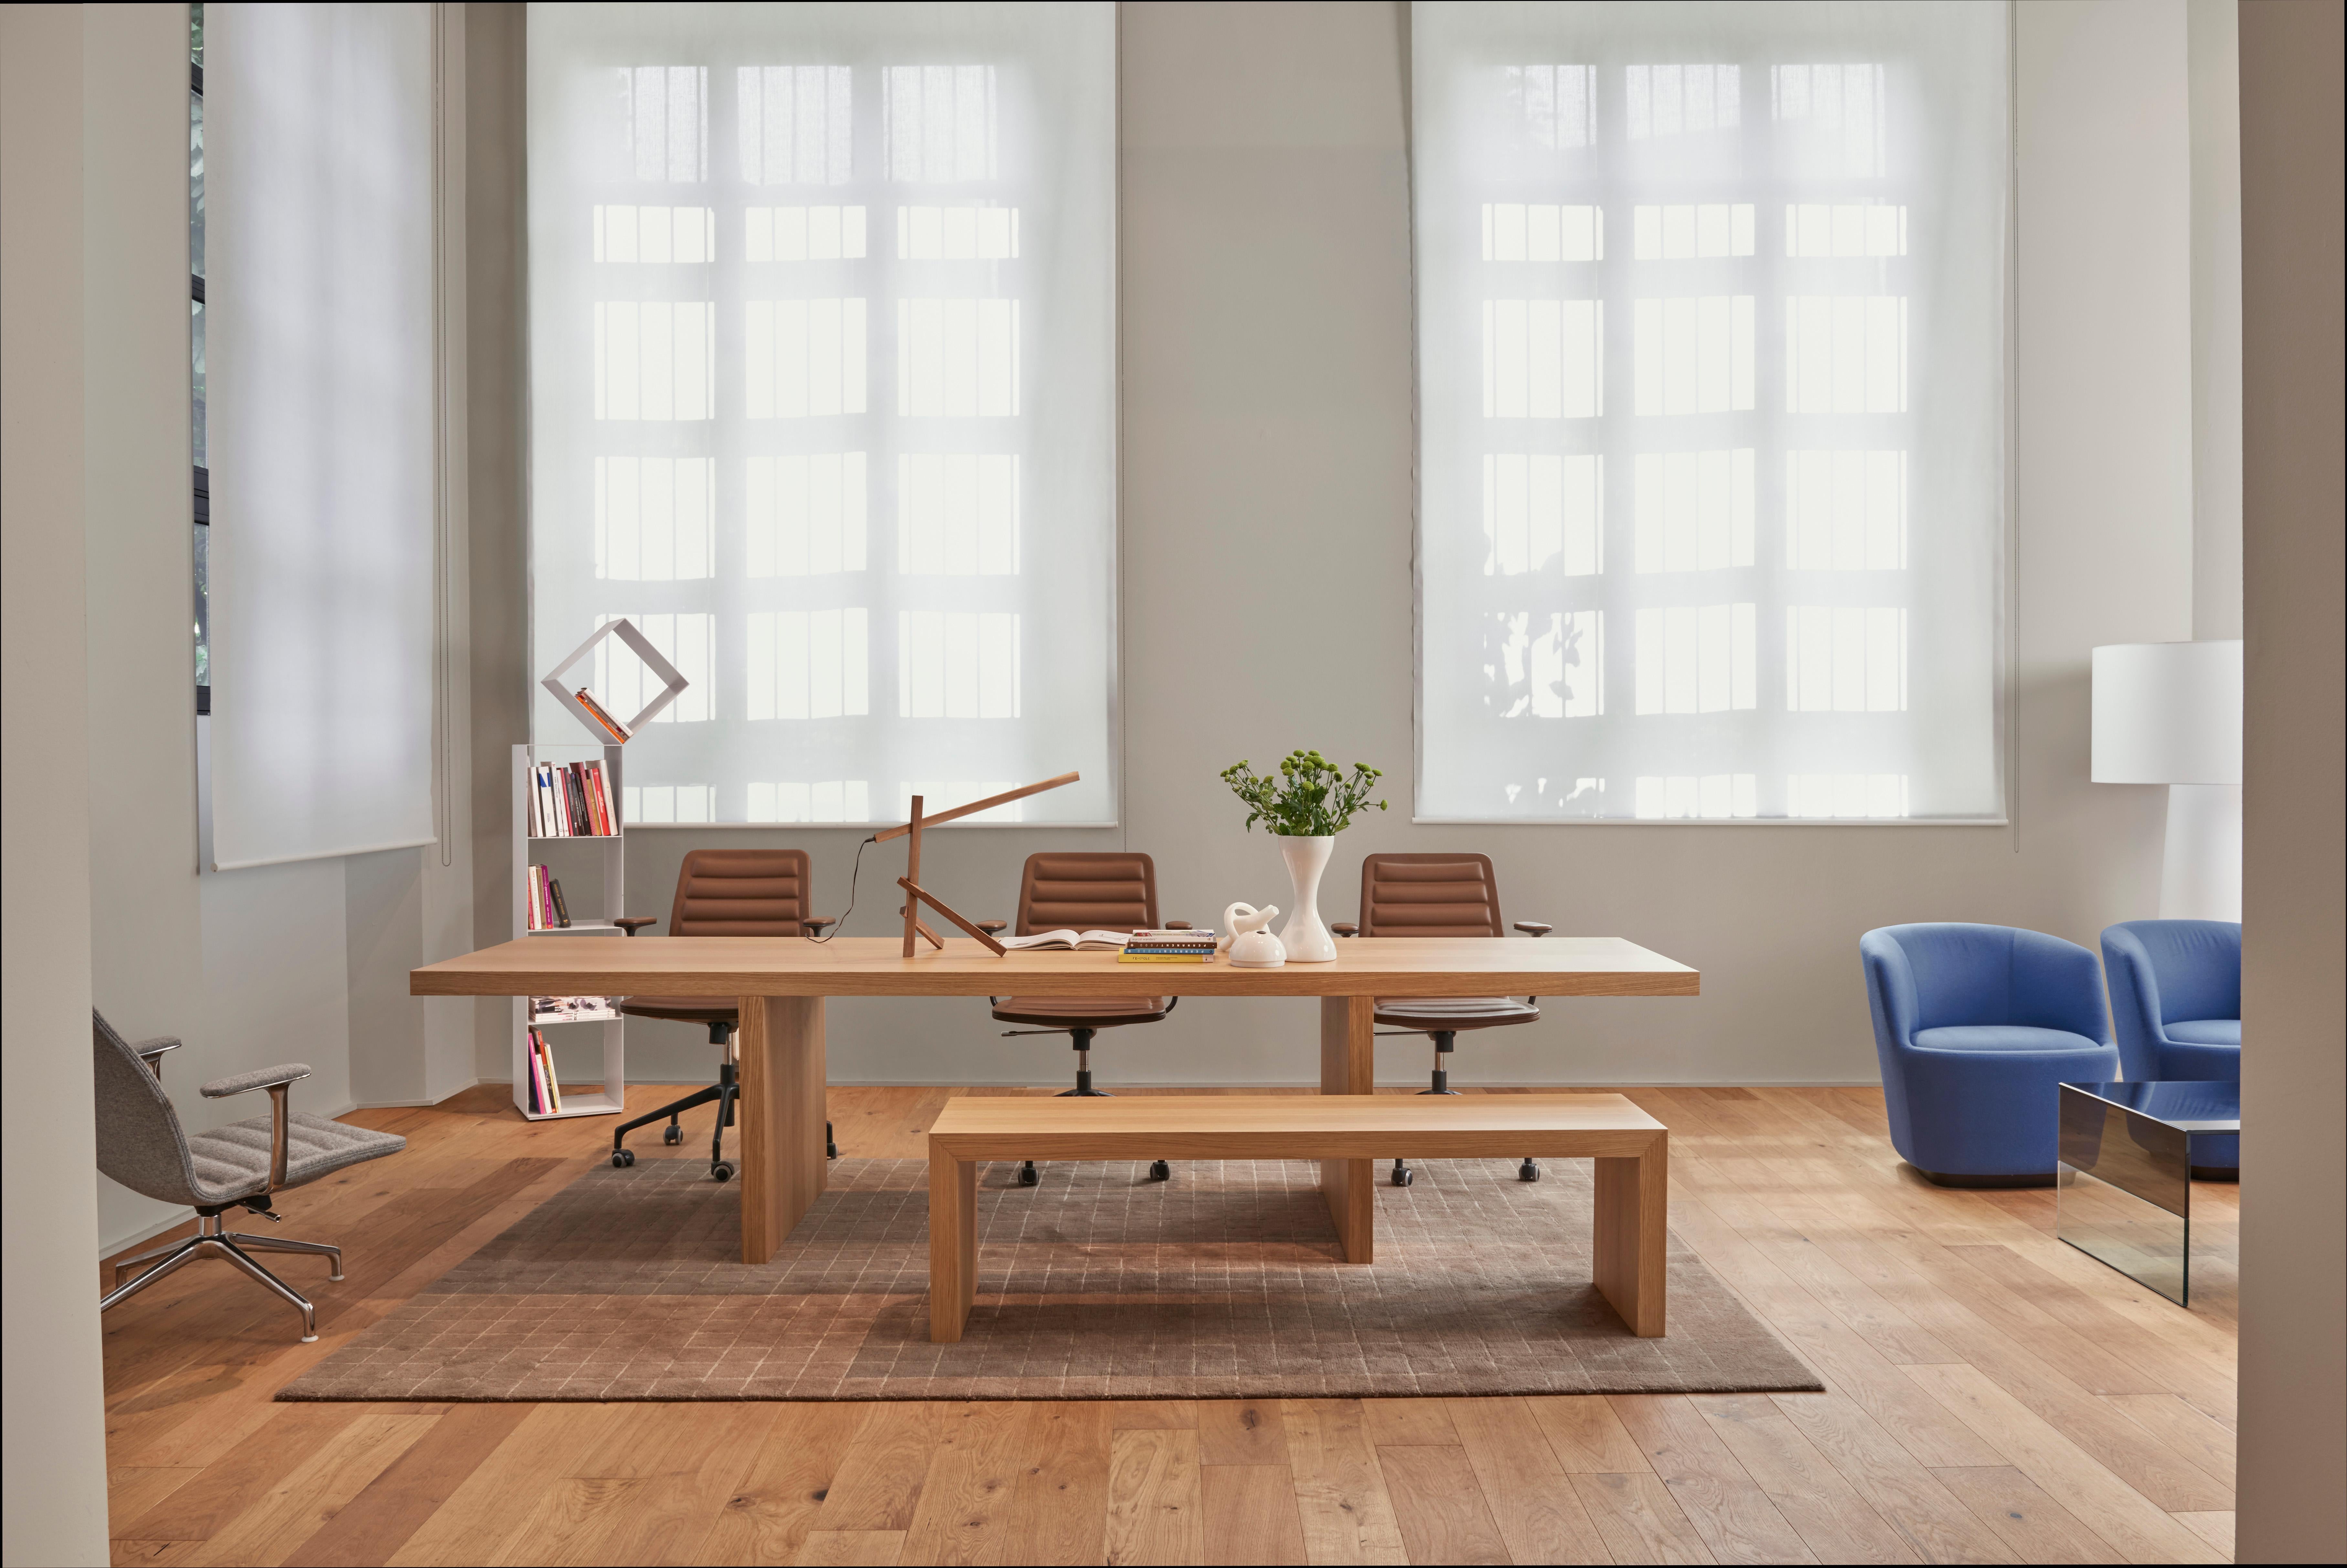 La table espoir Millenium, du designer Claudio Silvestrin, est une union monolithique de sapin alvéolé et de fibre de conglomérat de densité moyenne. Cette table, composée d'éléments verticaux recouverts d'un plateau horizontal de même hauteur et